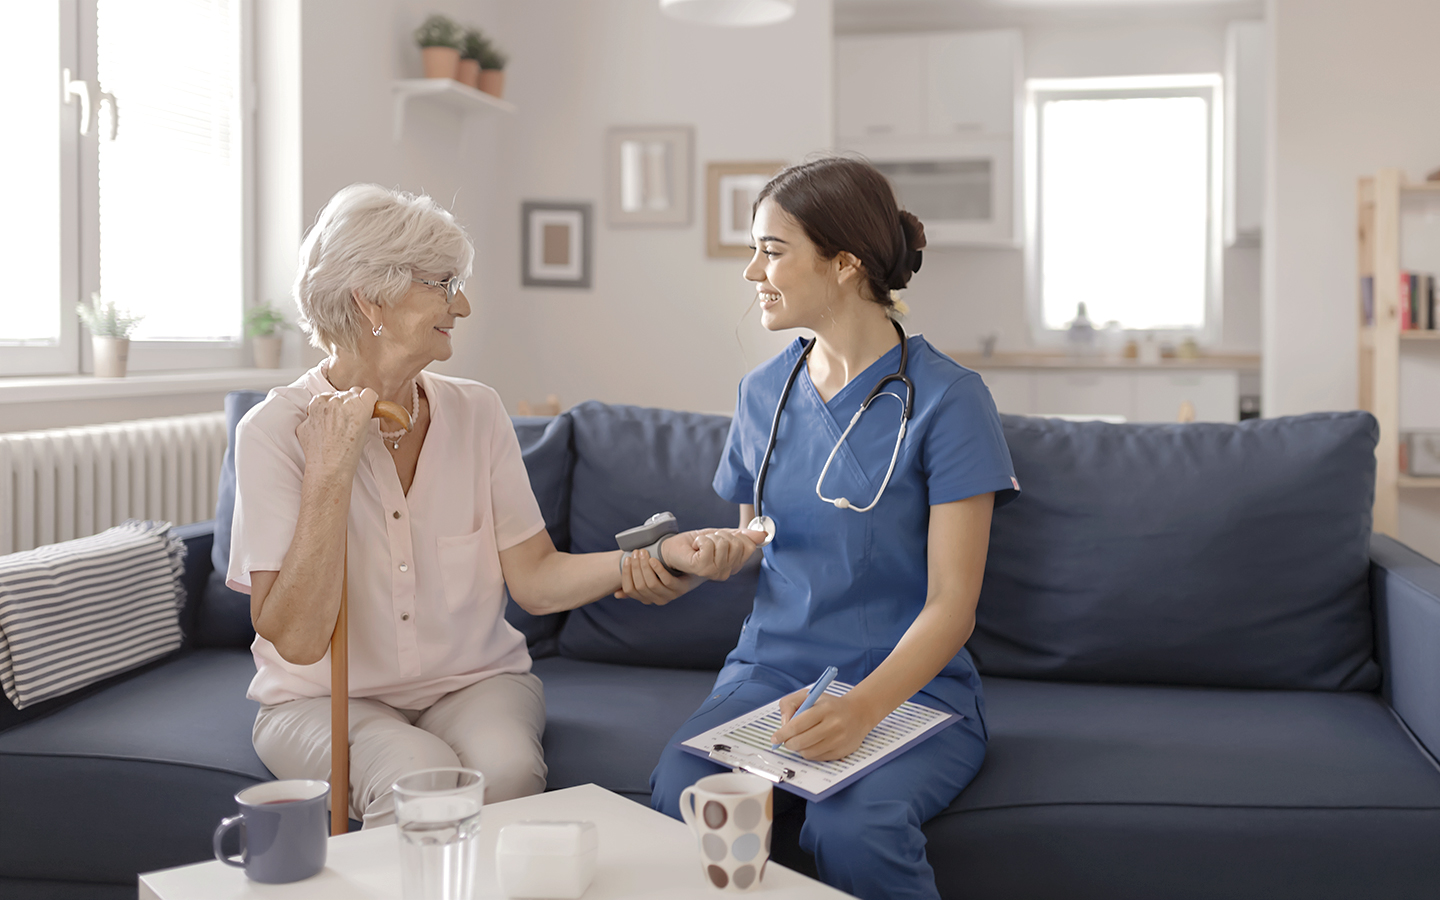 Foto zeigt eine Patientin (links) mit einer Pflegerin (rechts) im Gespräch. Beide sitzen auf einem Sofa in einer hellen Wohnung. Die Pflegerin trägt blaue Berufskleidung.